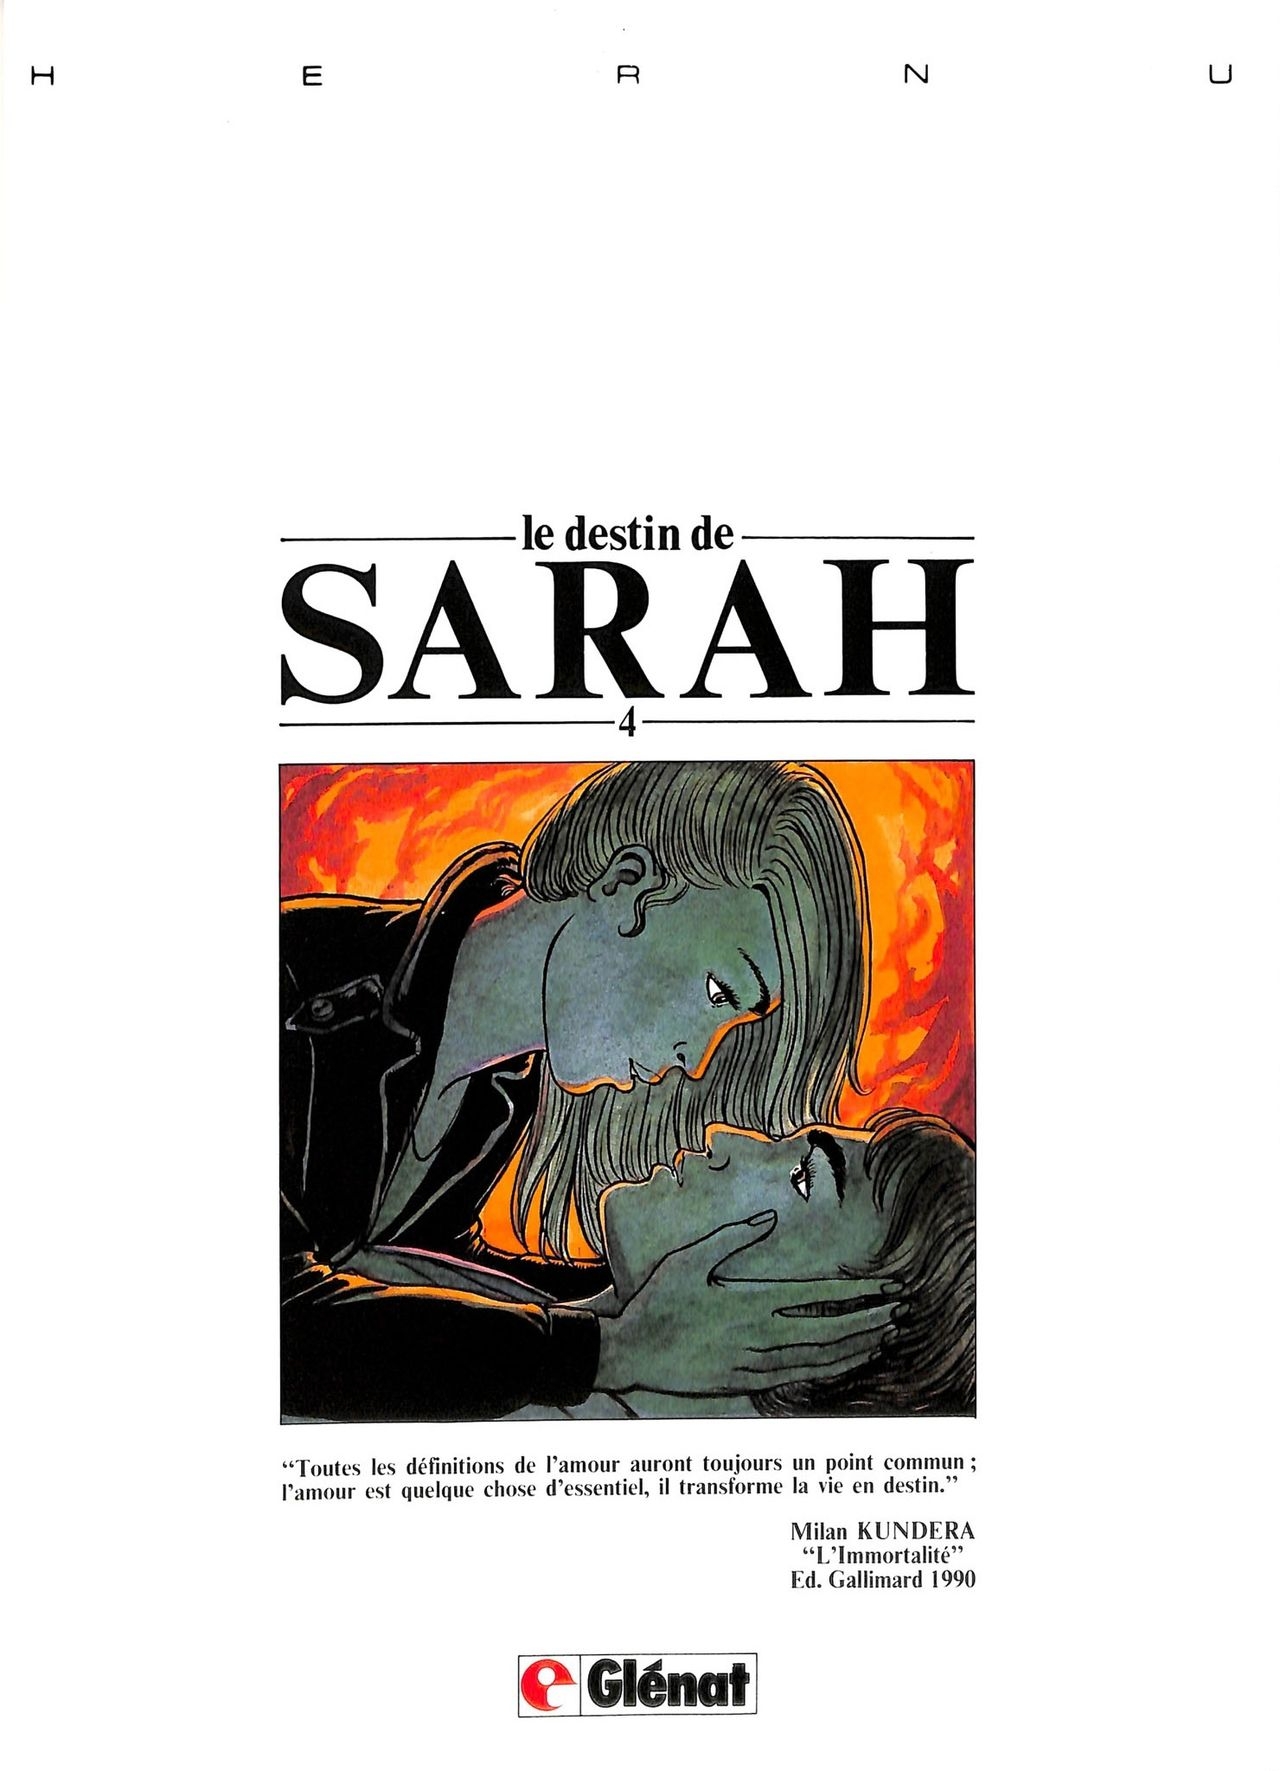 [Hernu] le destin de Sarah - 4 - la cité des fusains [French] 2